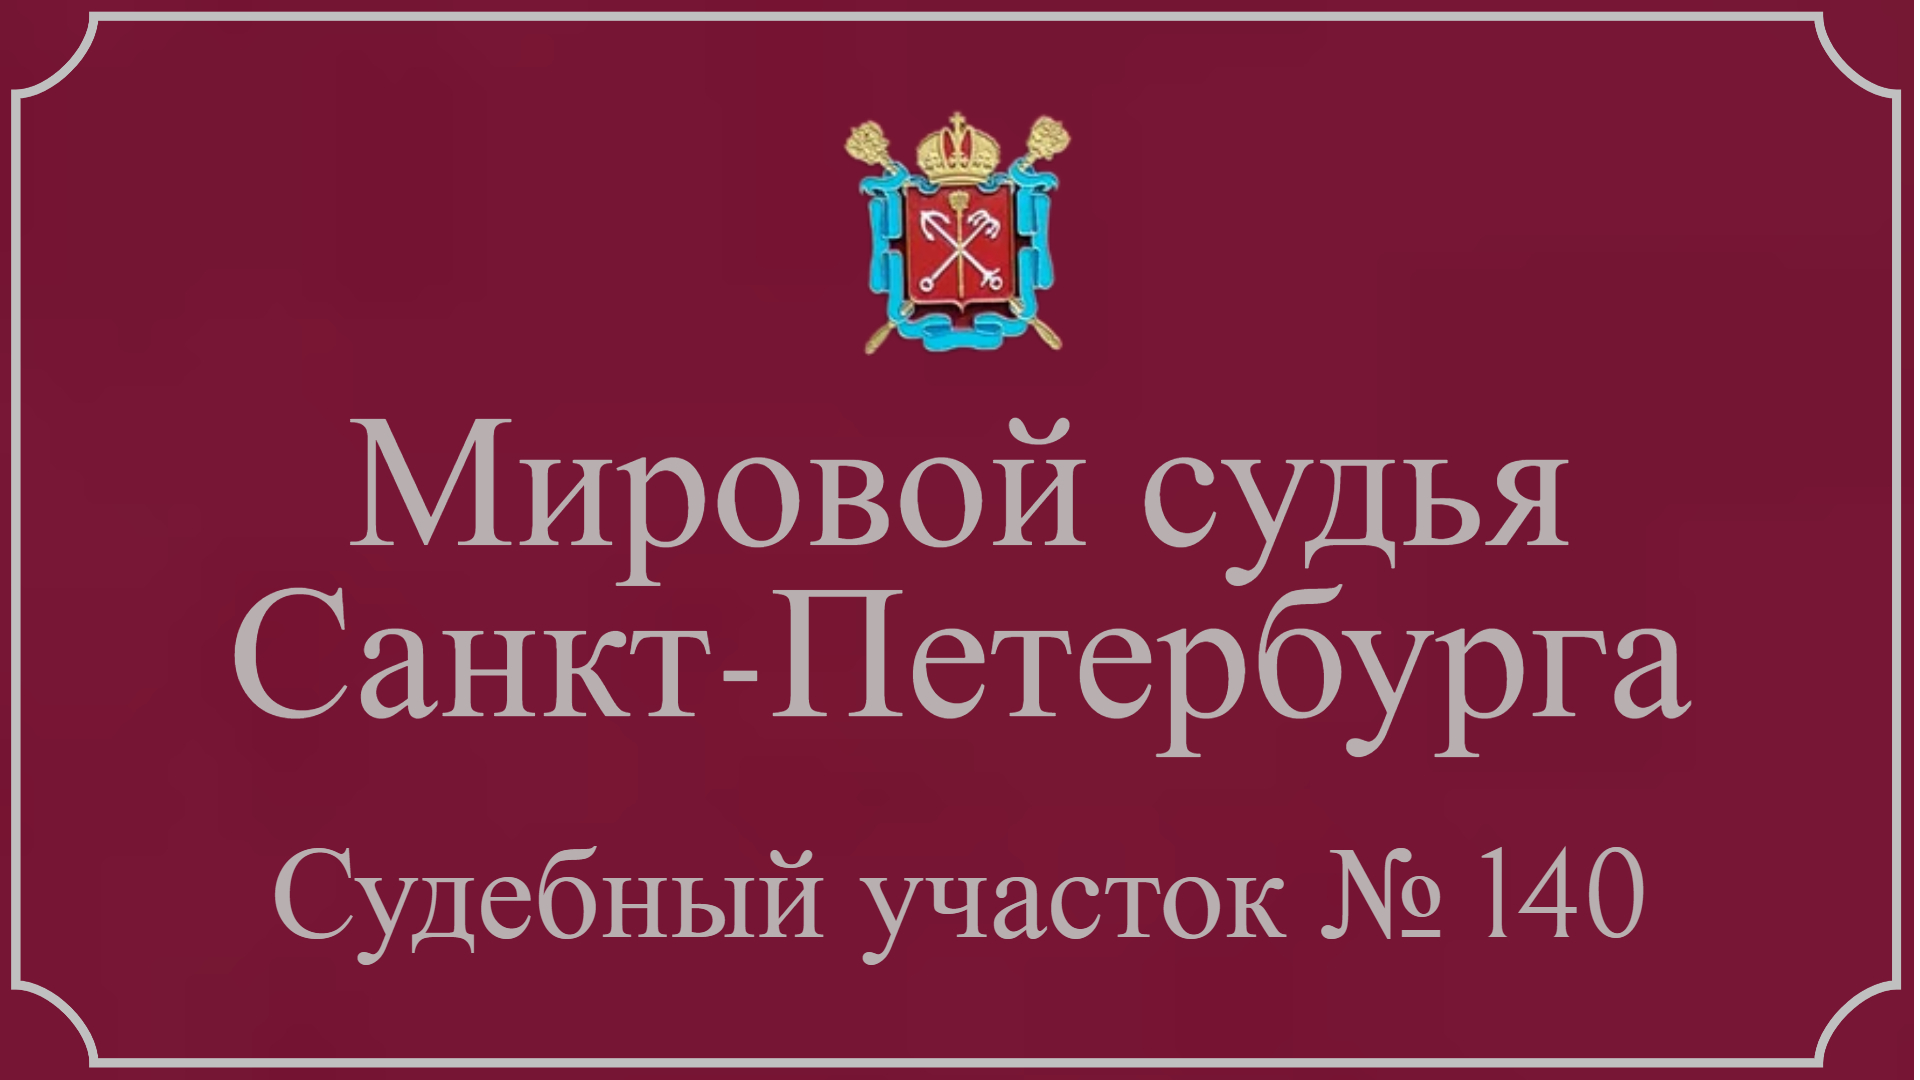 Информация по 140 судебному участку в Санкт-Петербурге.